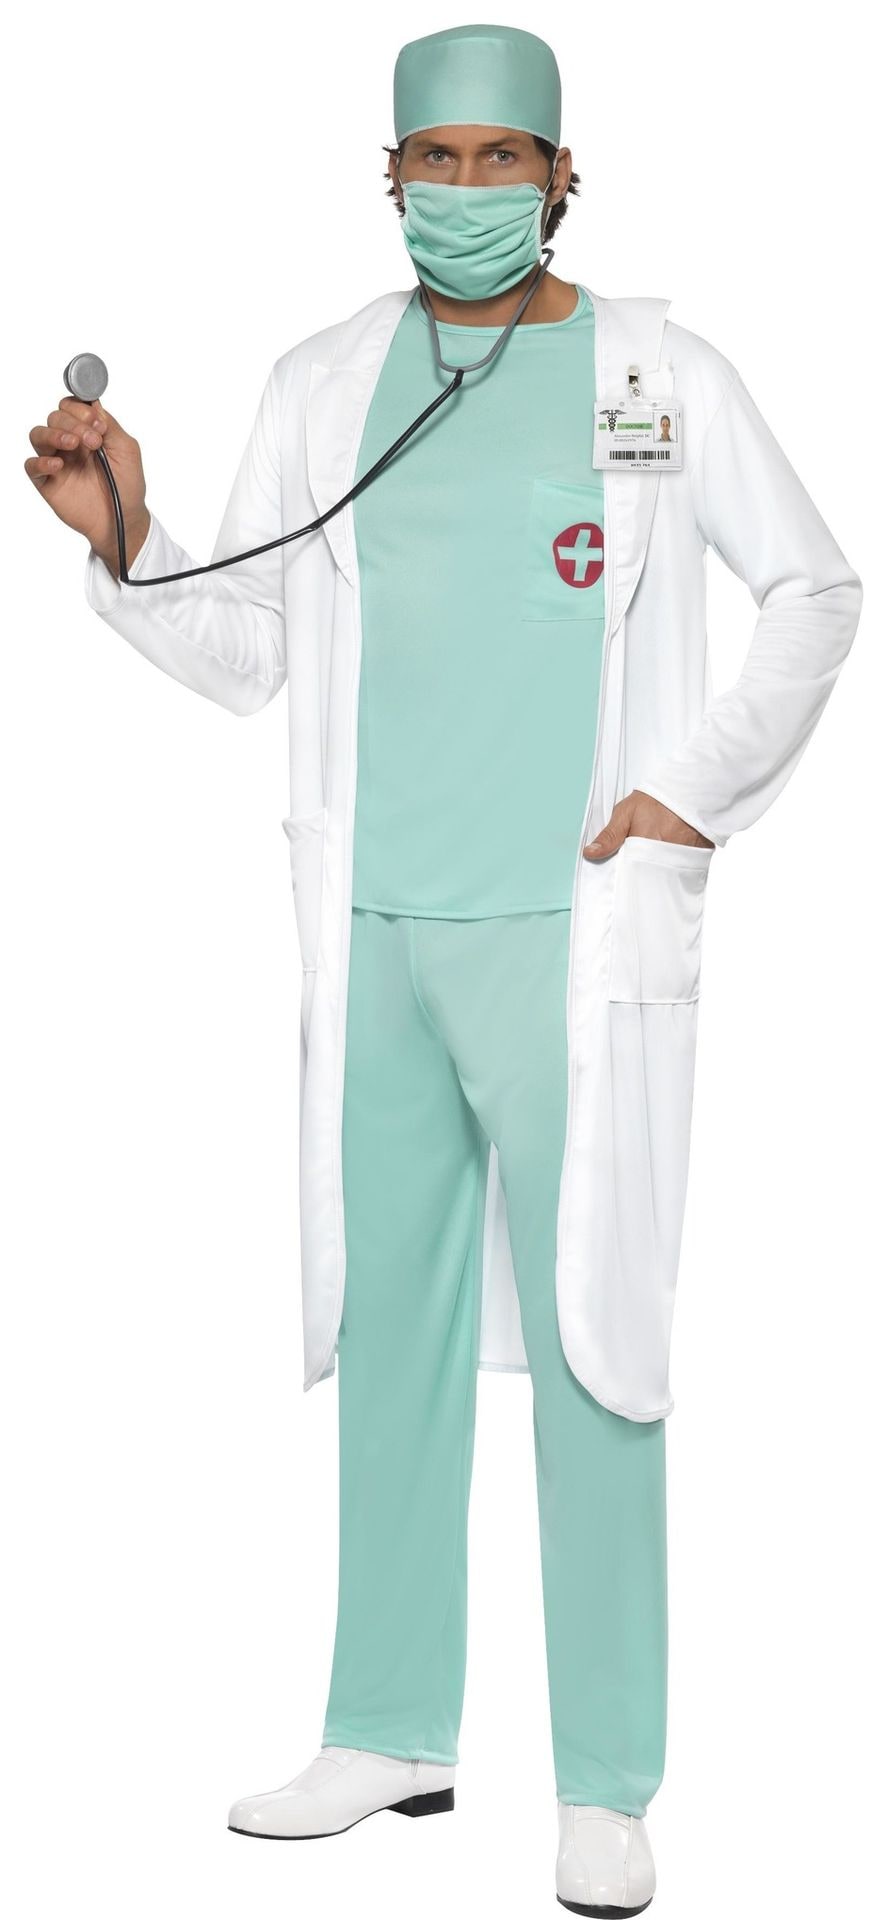 Jas dokters kostuum